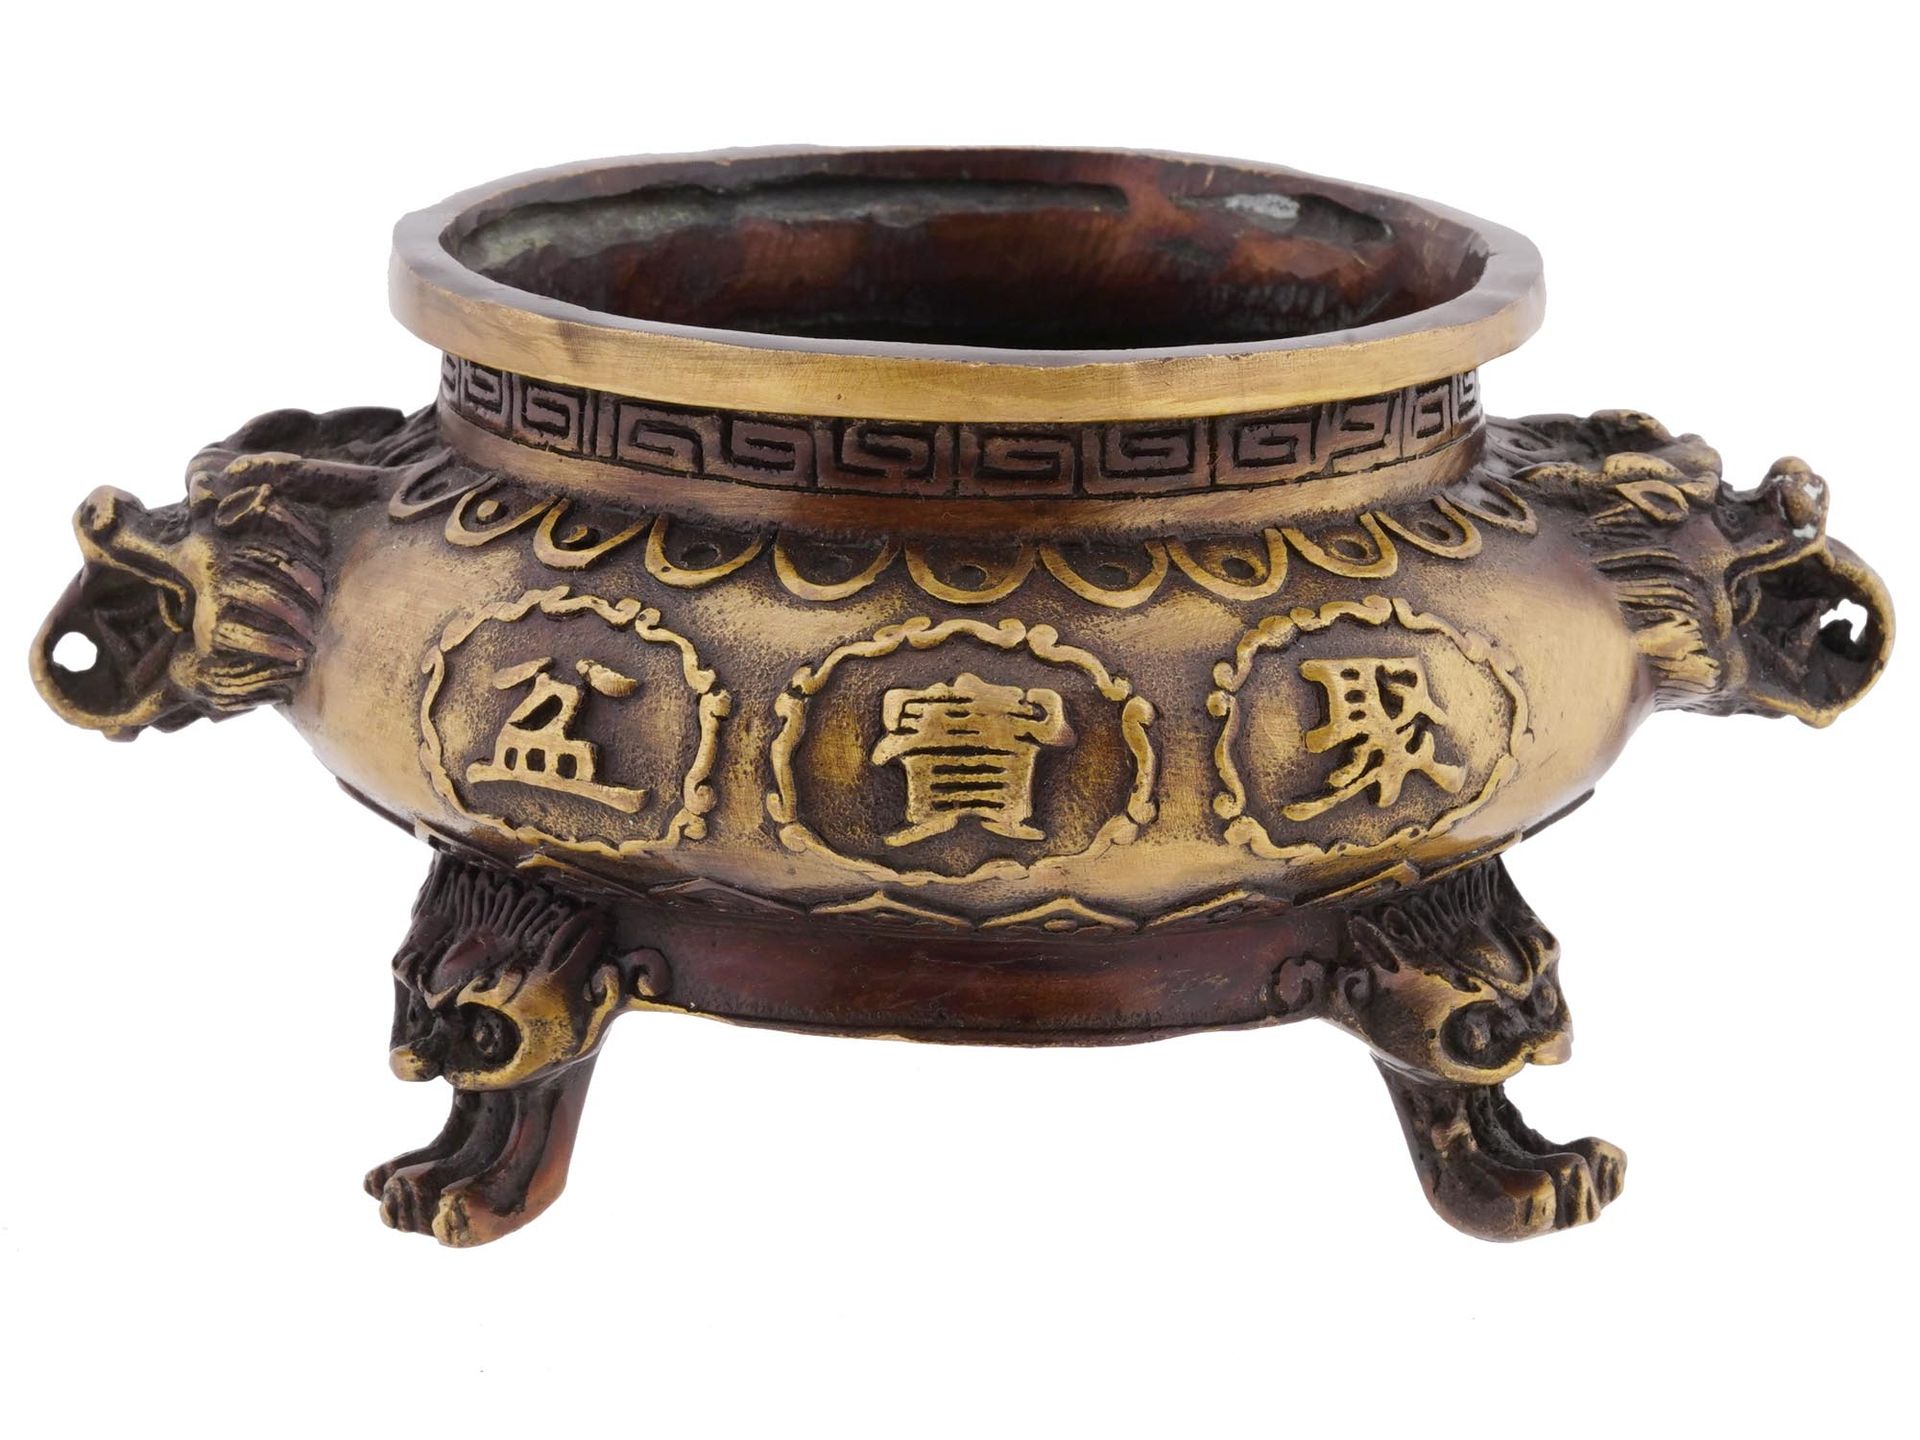 一件中国古董有底鎏金银铜香炉。器物外部饰有刻有象形文字的徽章和几何